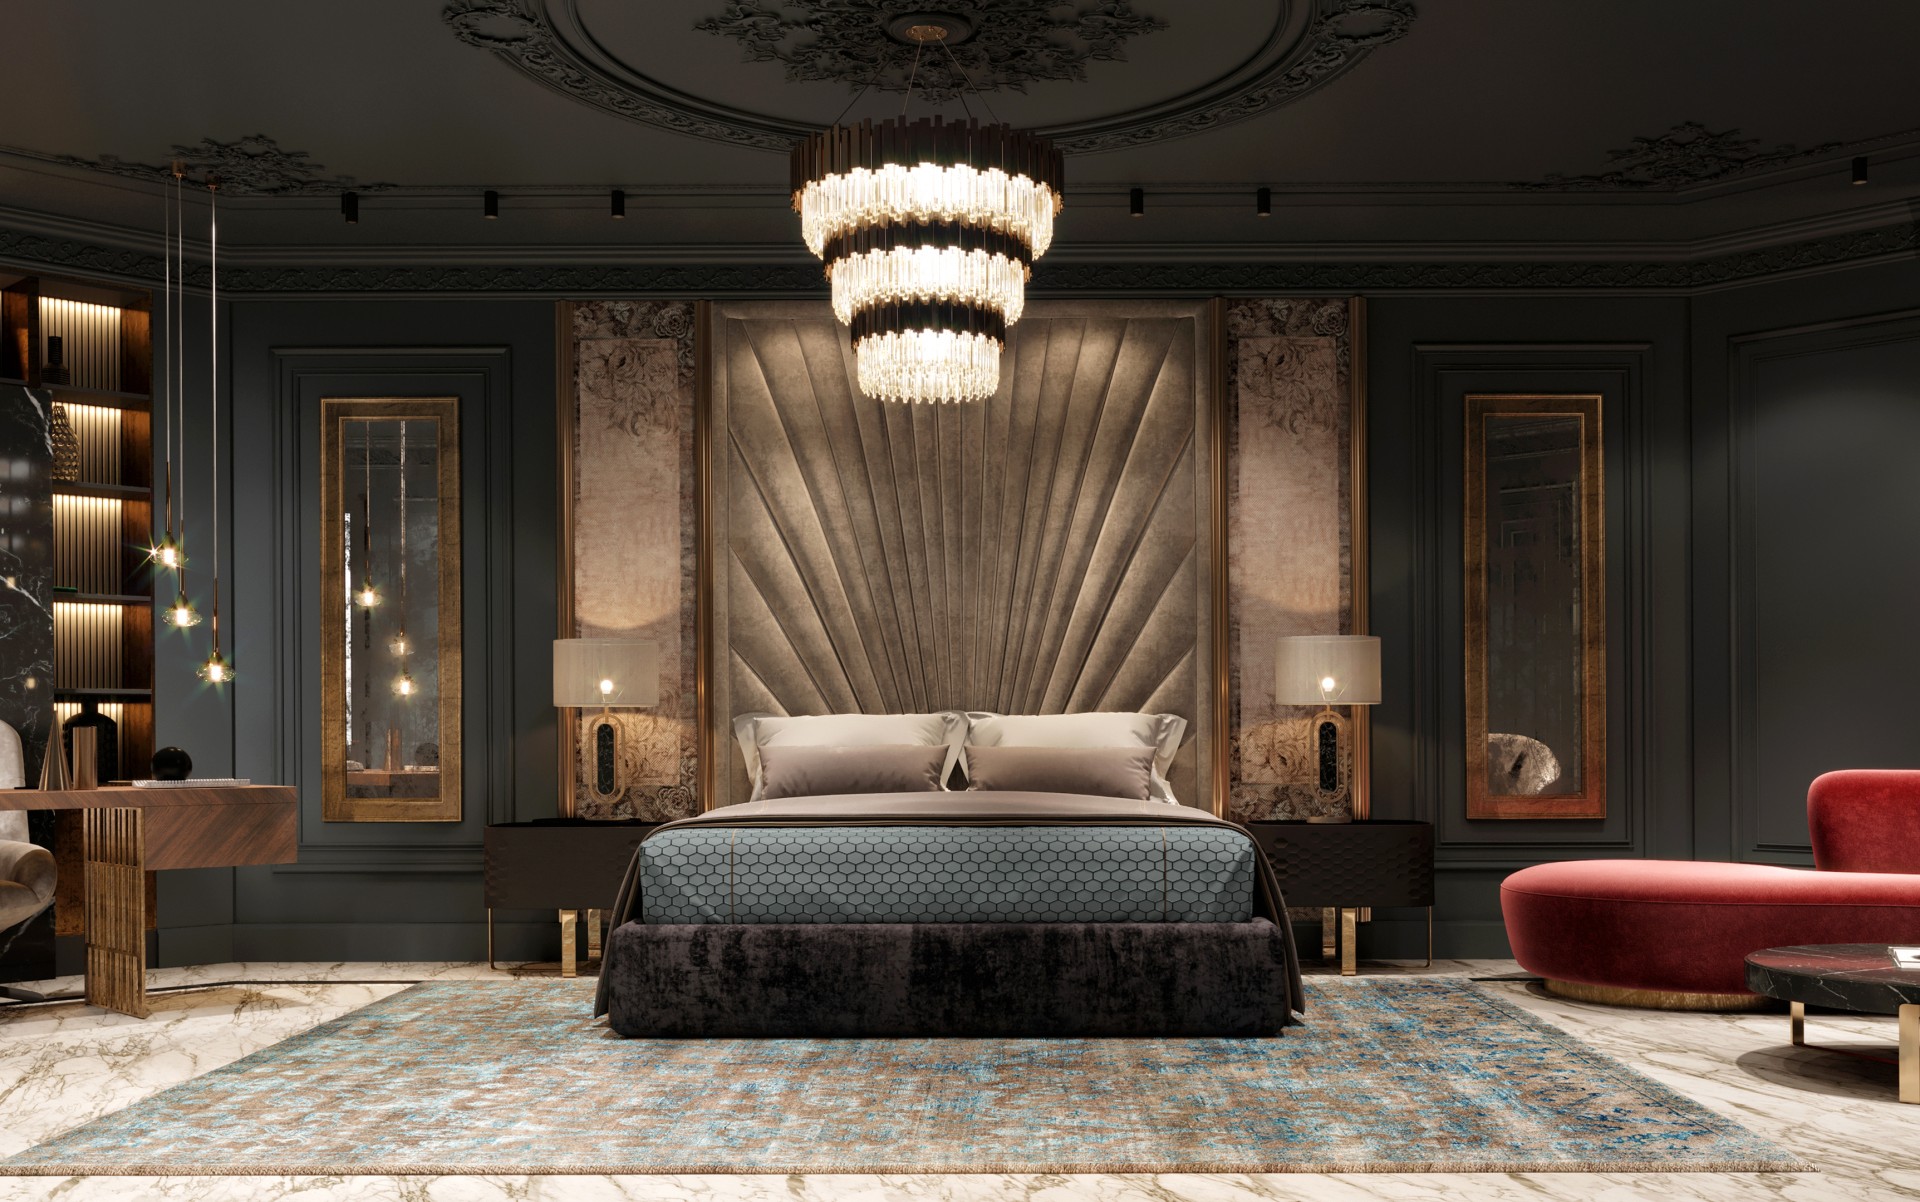 VWArtclub - Dark Luxury Bedroom